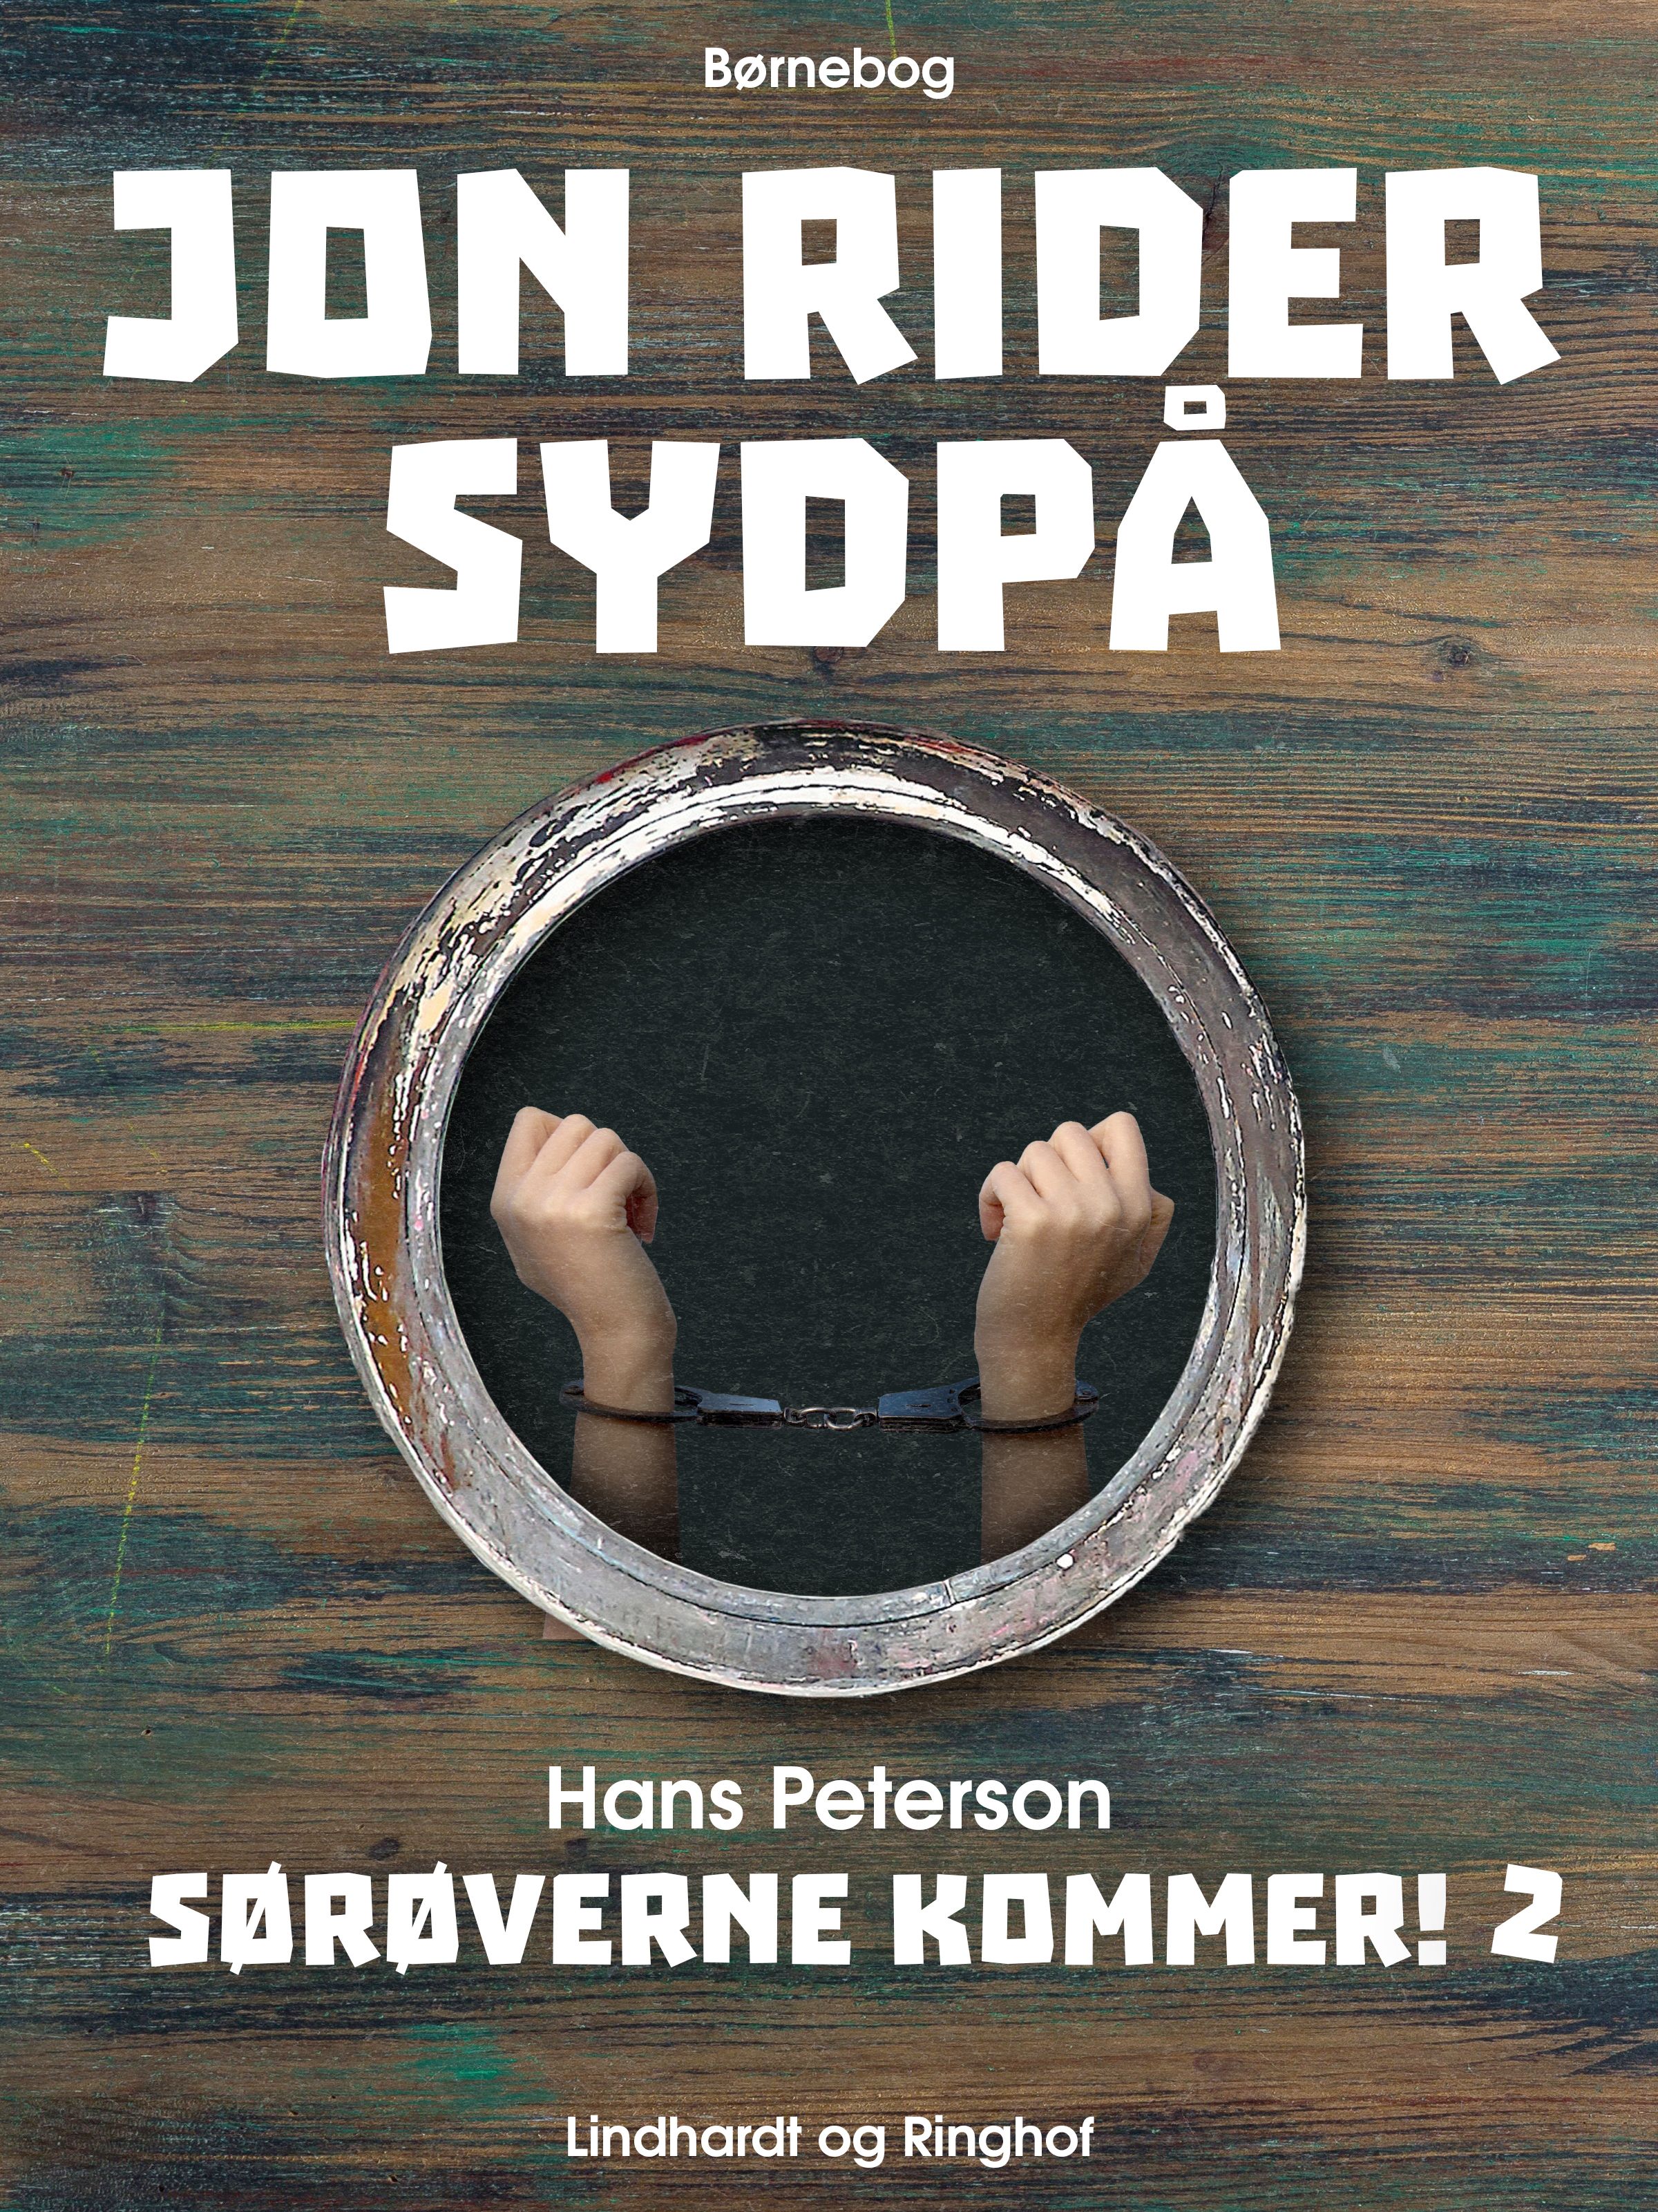 Jon rider sydpå, lydbog af Hans Peterson